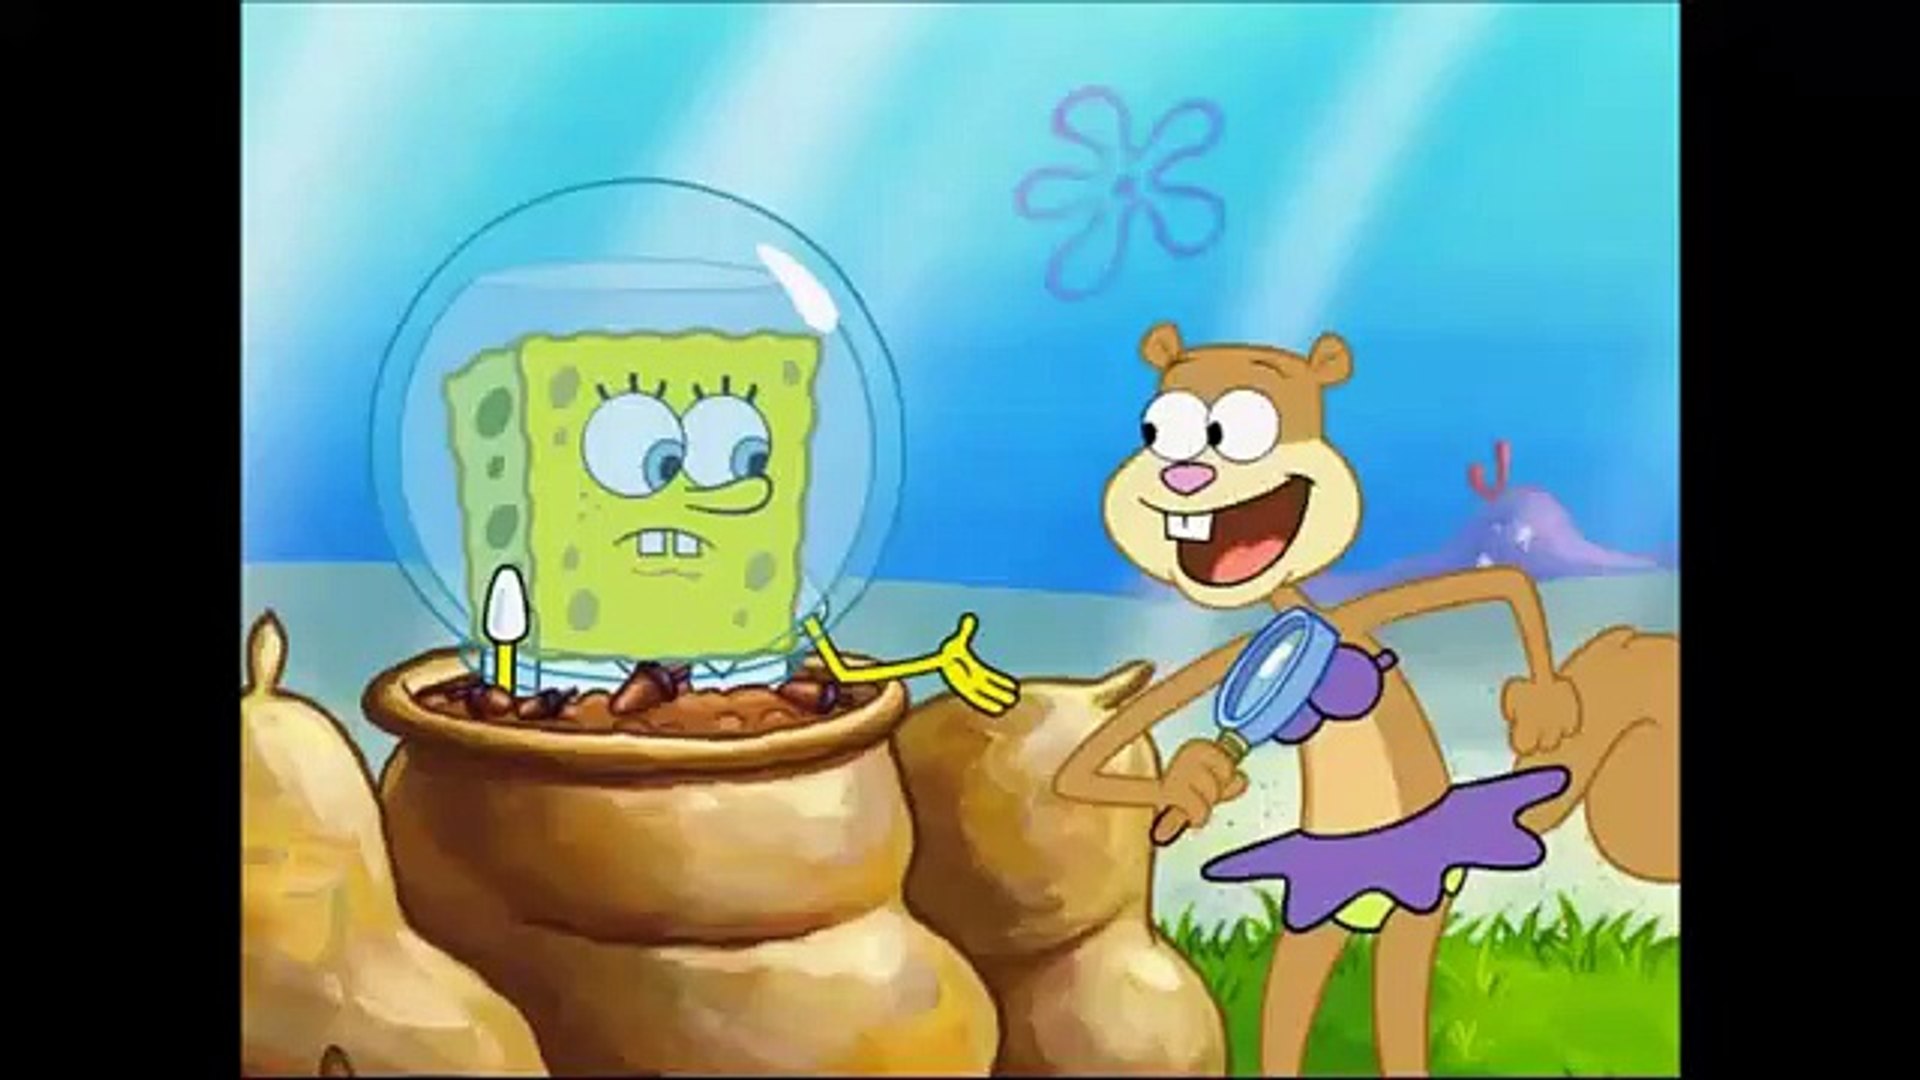 spongebob overbooked